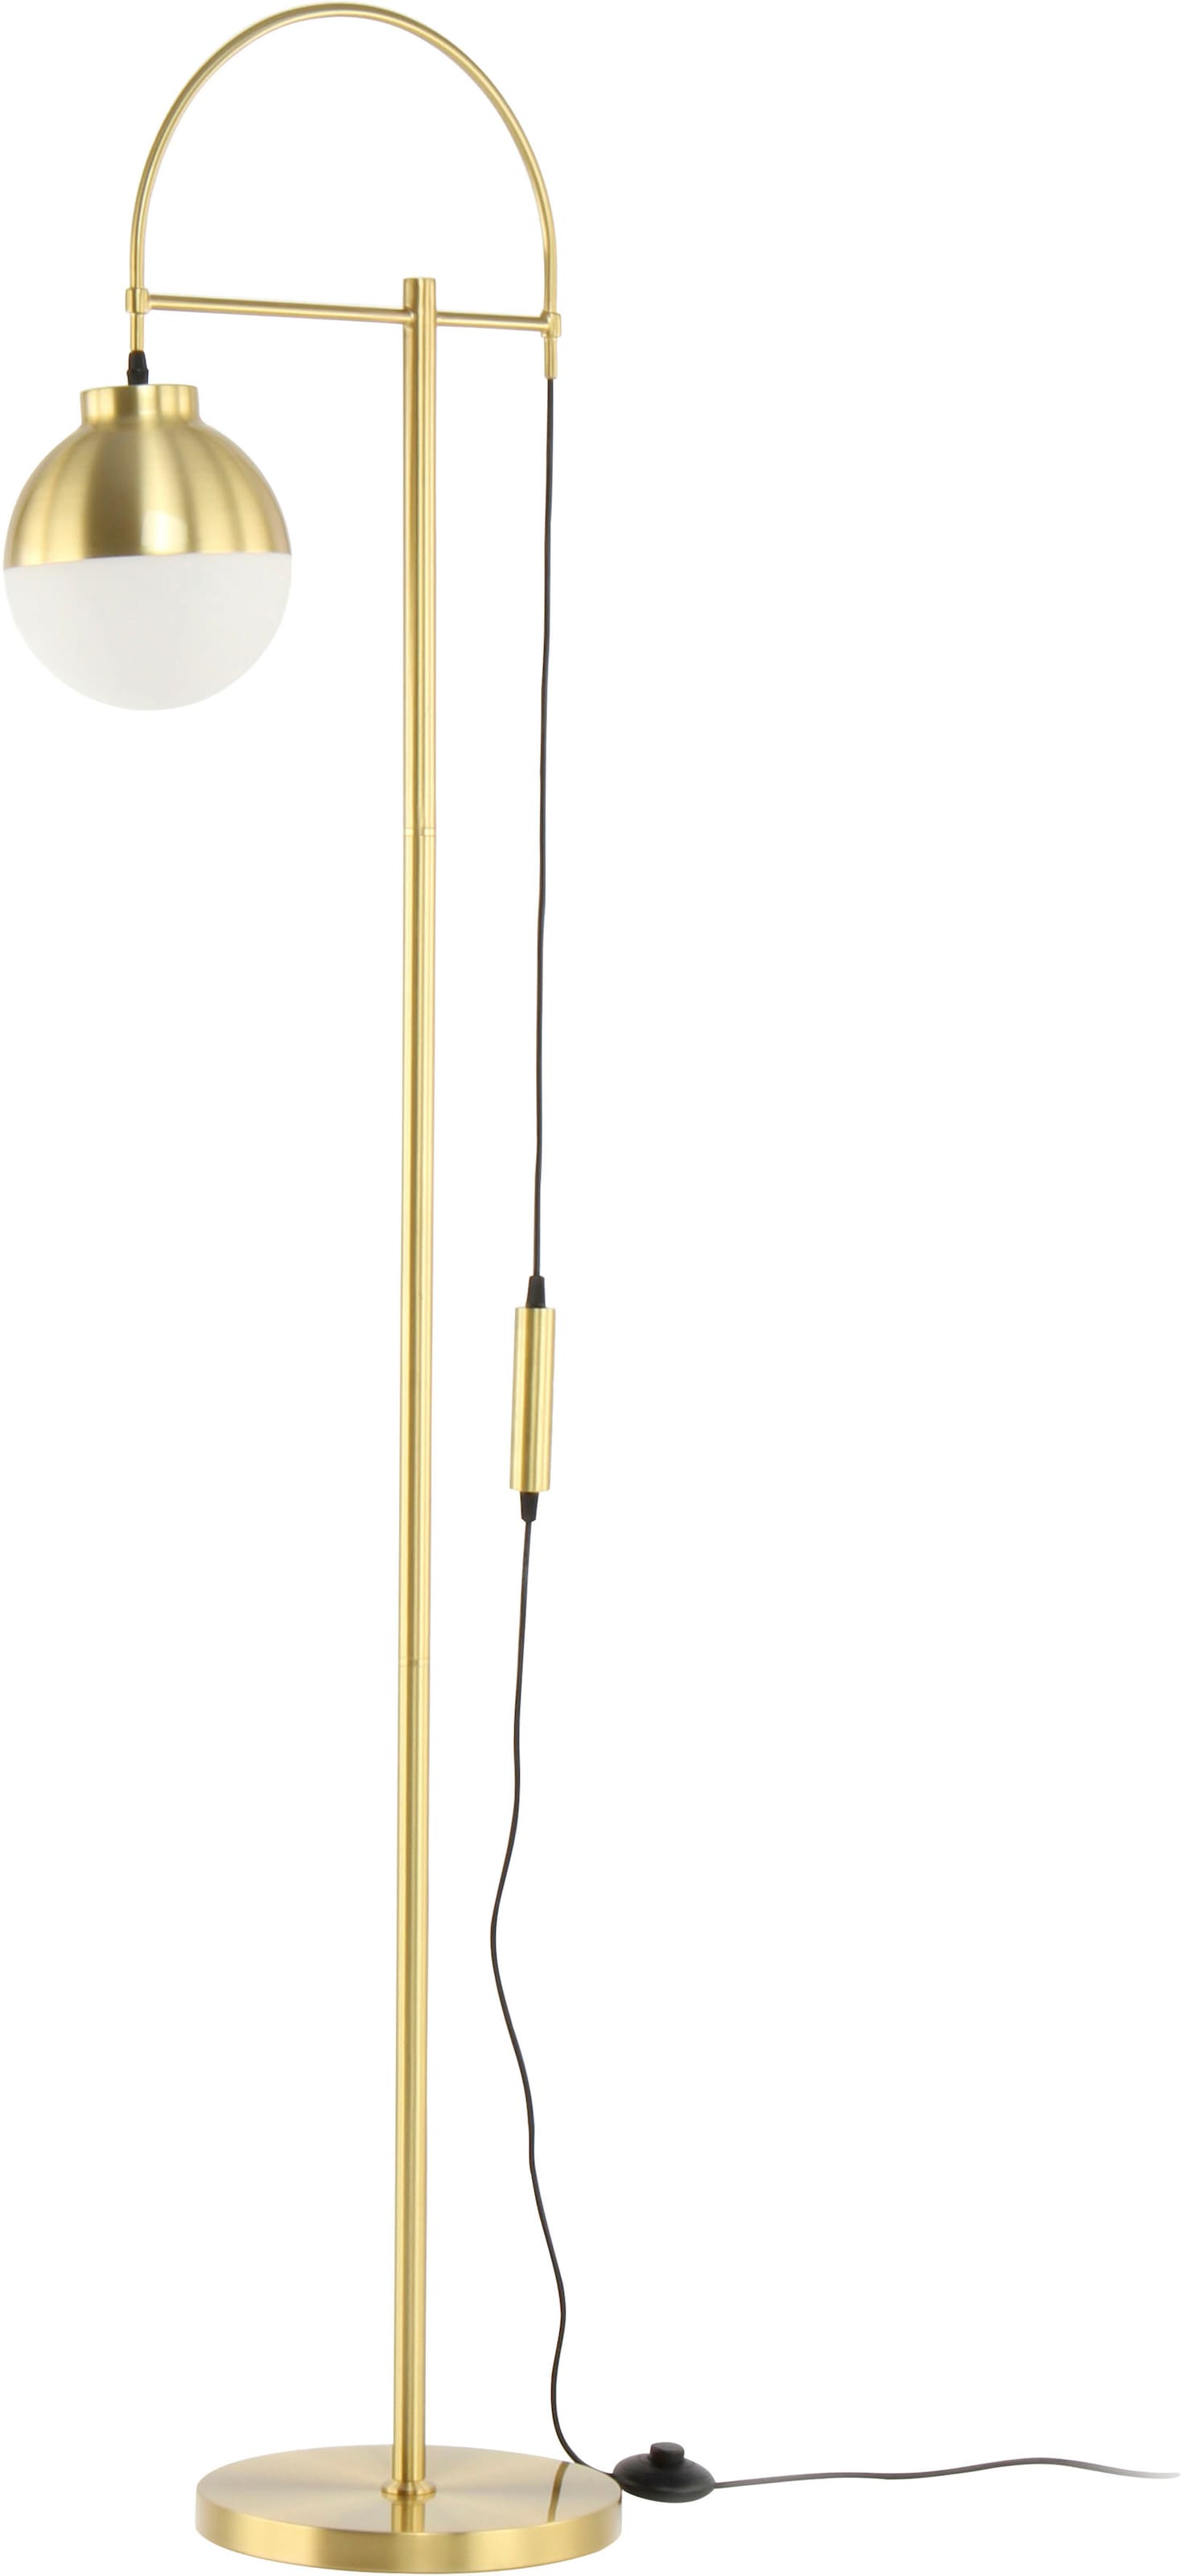 Stehlampe »Lavina«, schlicht, modern, kugelförmig